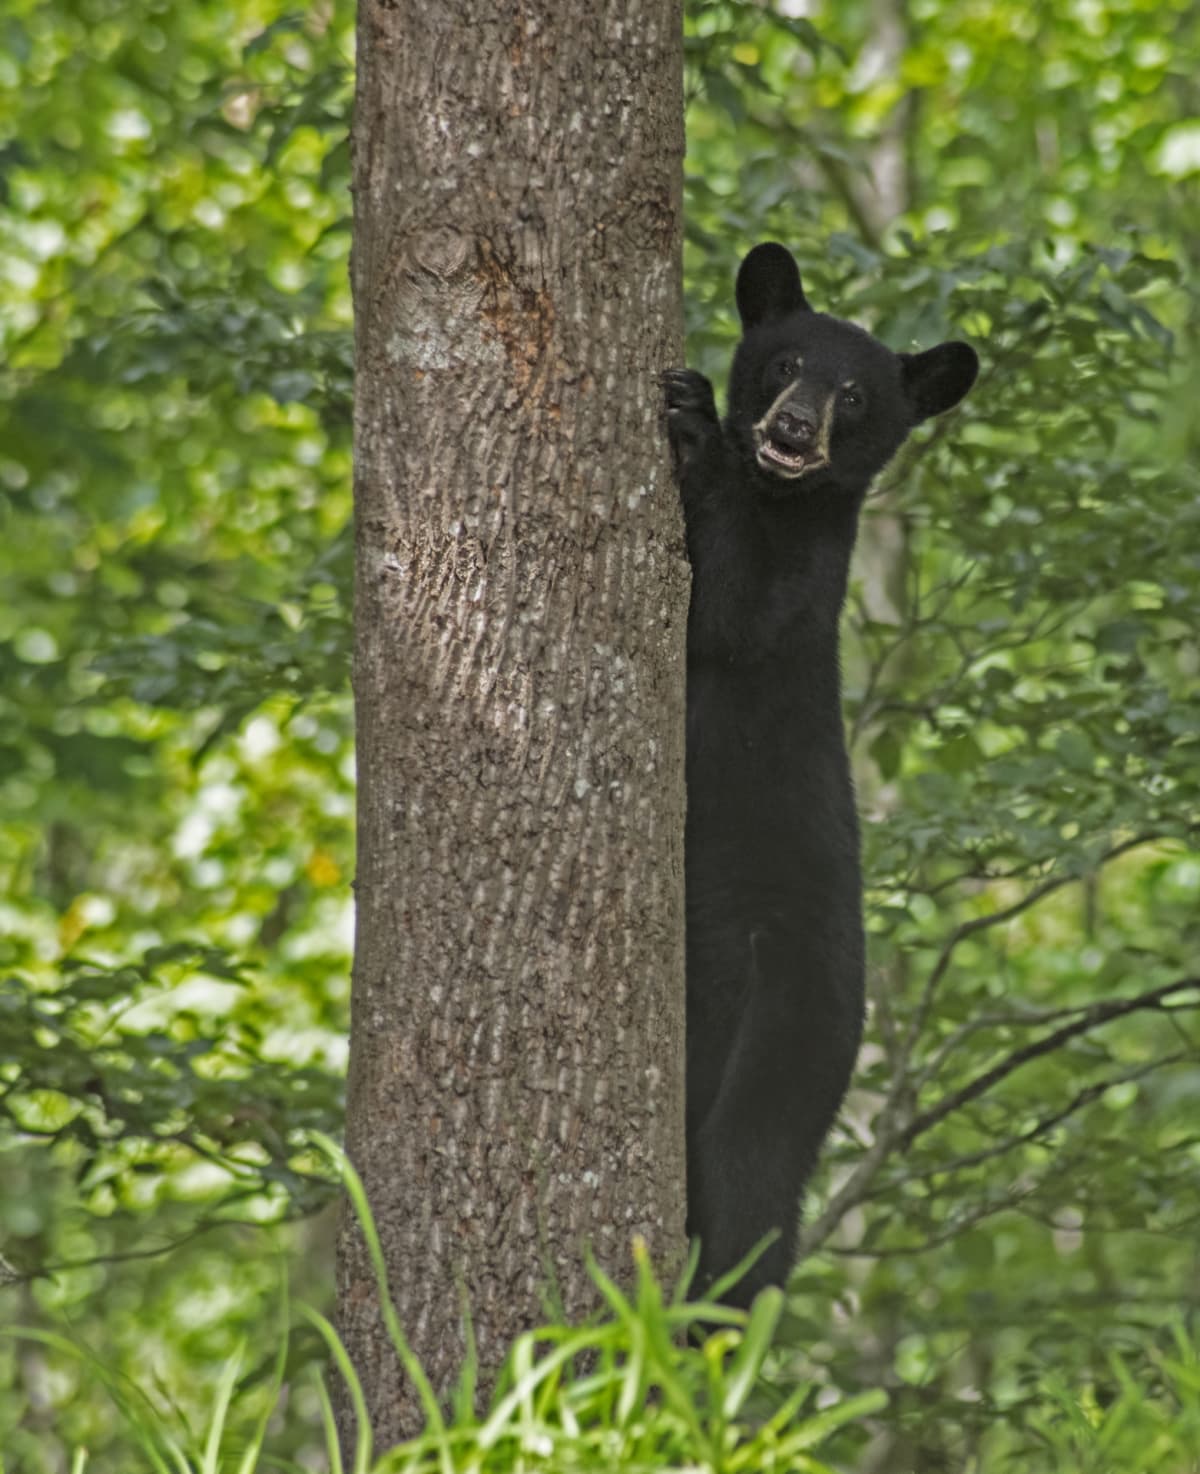 Bear cub climbing a tree.